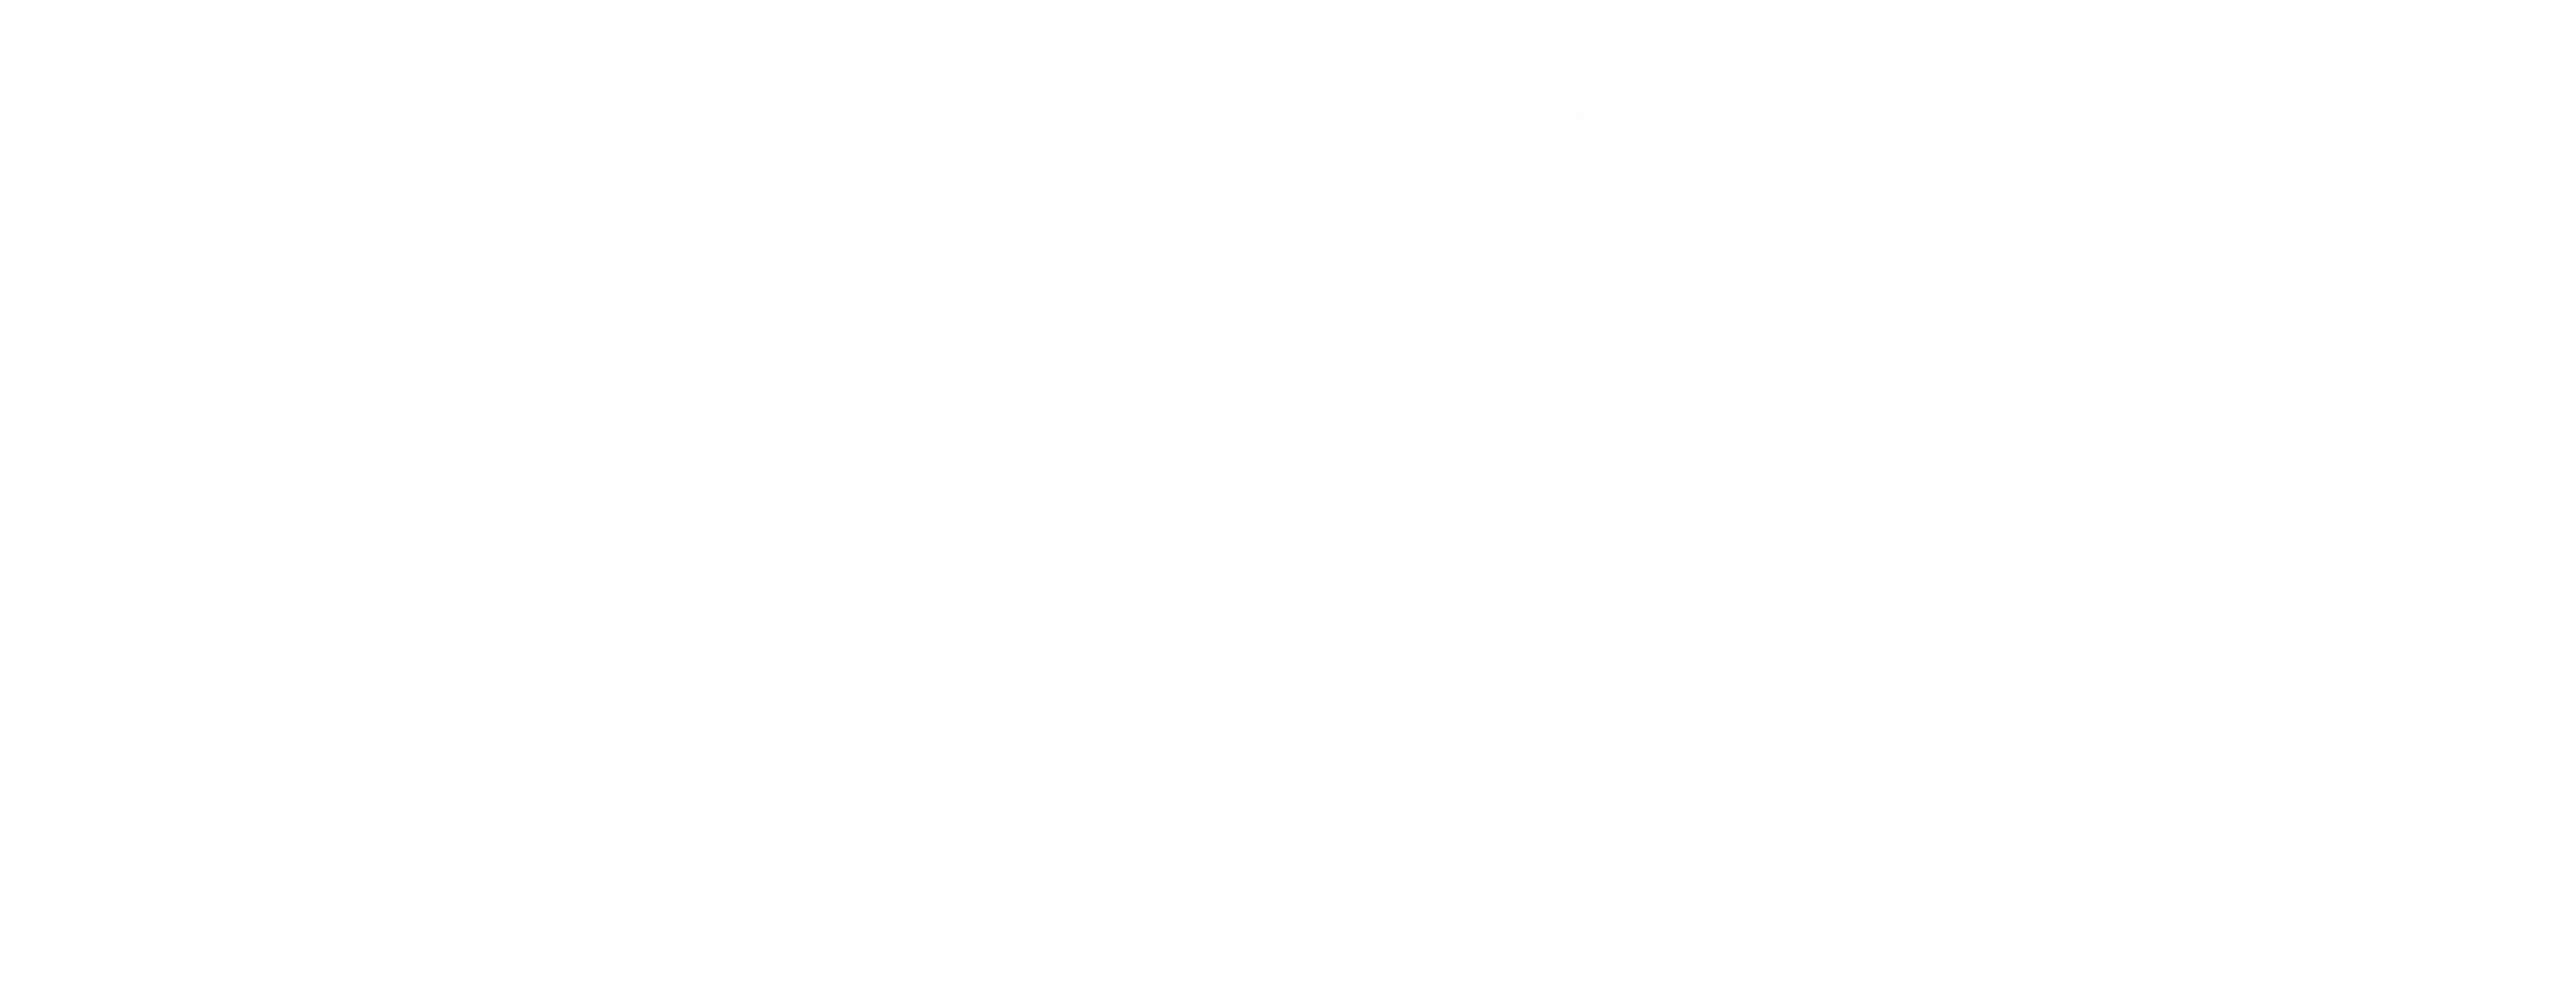 Garden of Delights typographic title